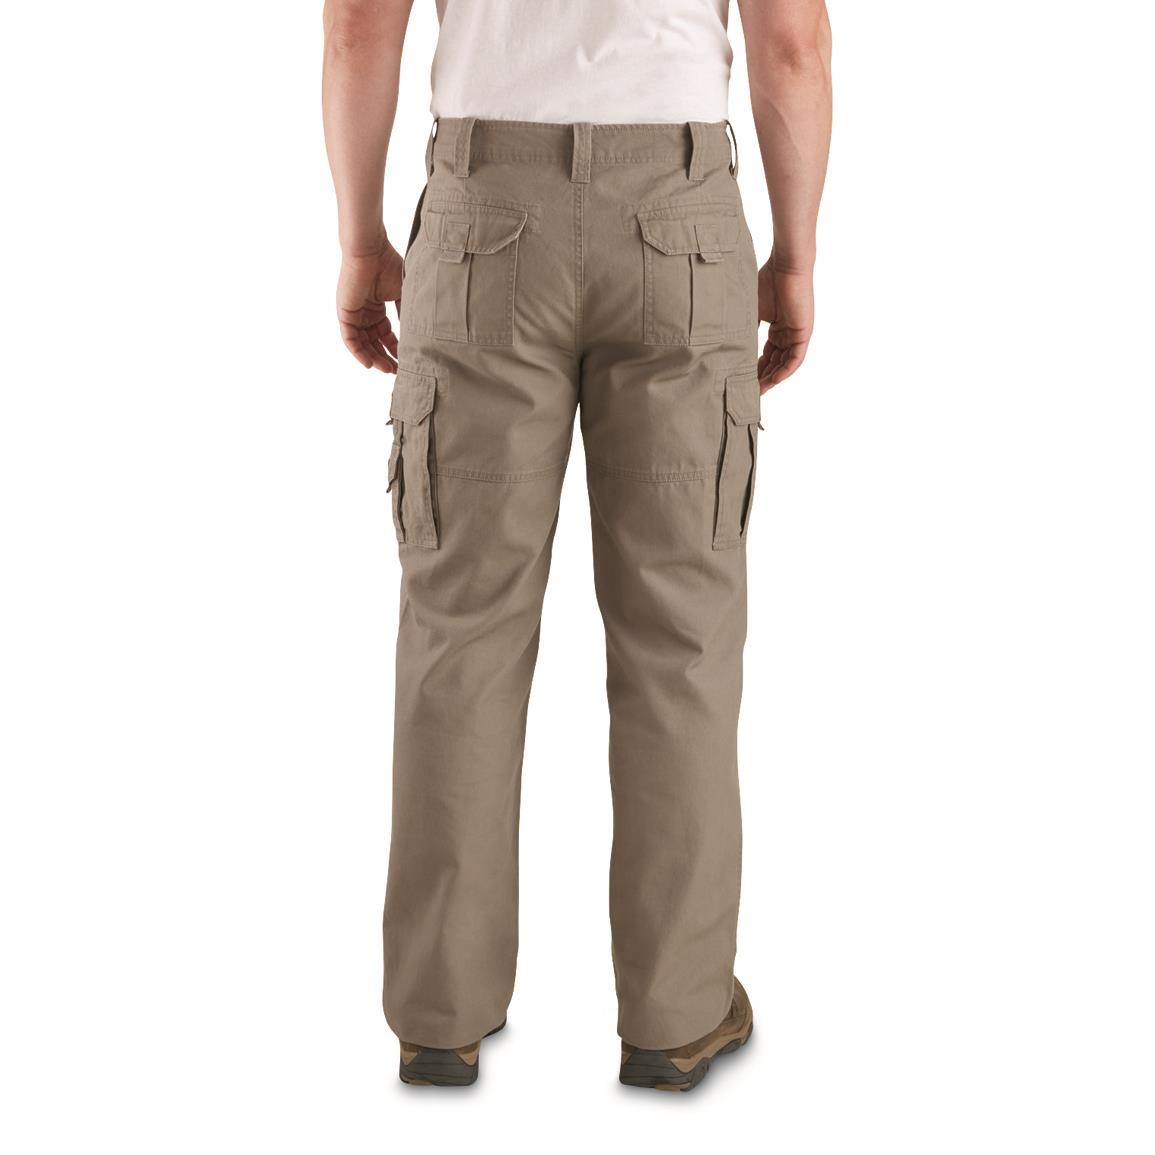 TRU-SPEC Men's 24-7 Series Ascent Pants - 671216, Tactical Clothing at ...